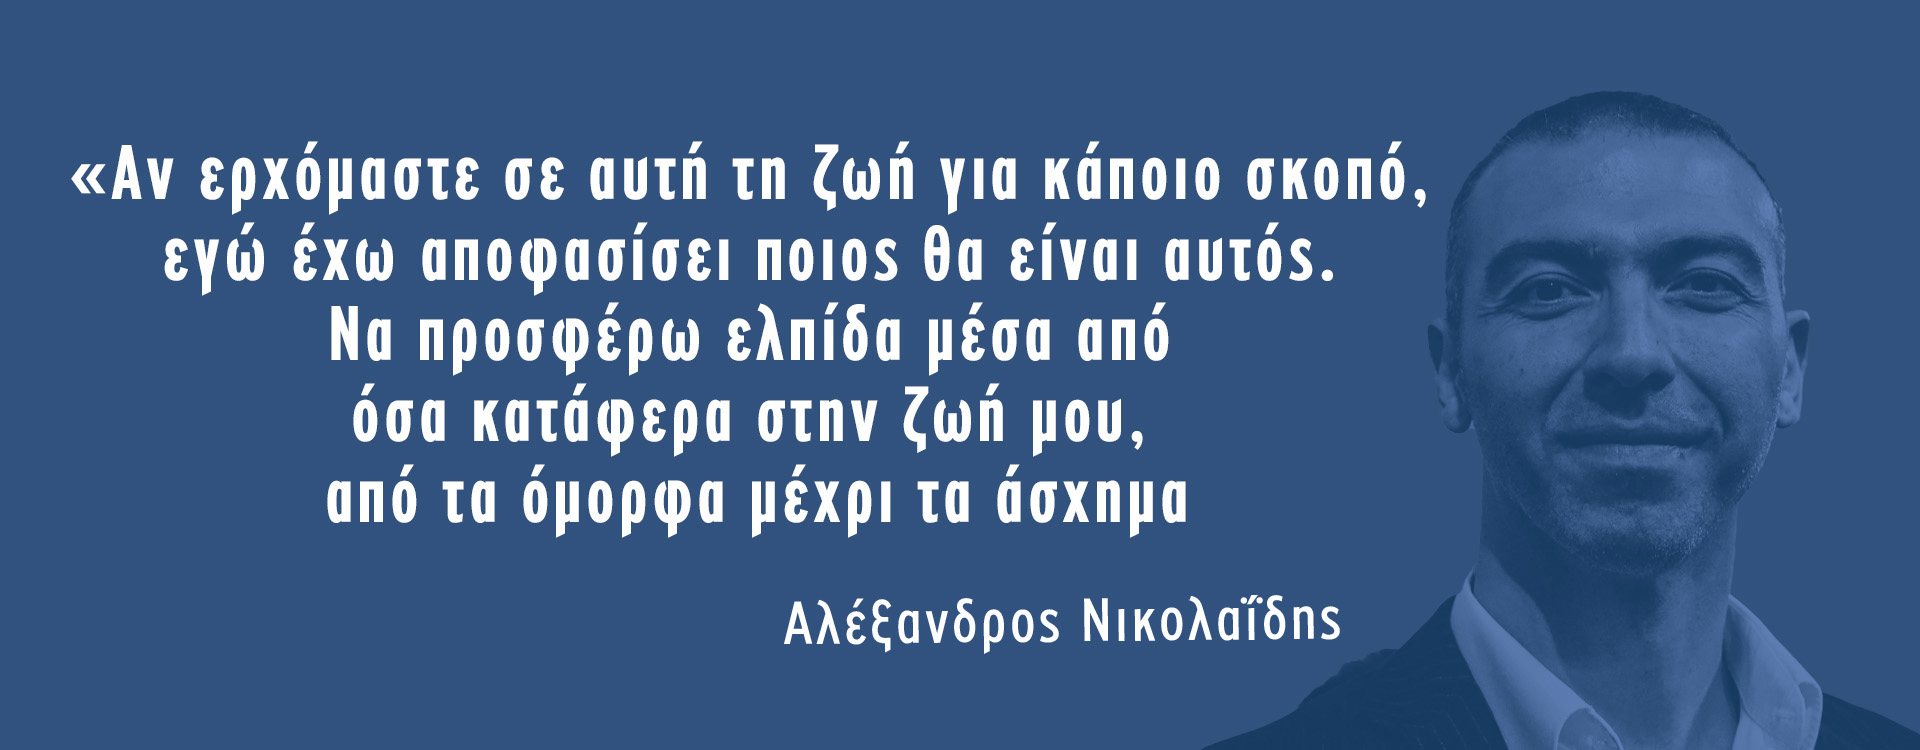 Ας ακούσουμε τον Αλέξανδρο Νικολαΐδη